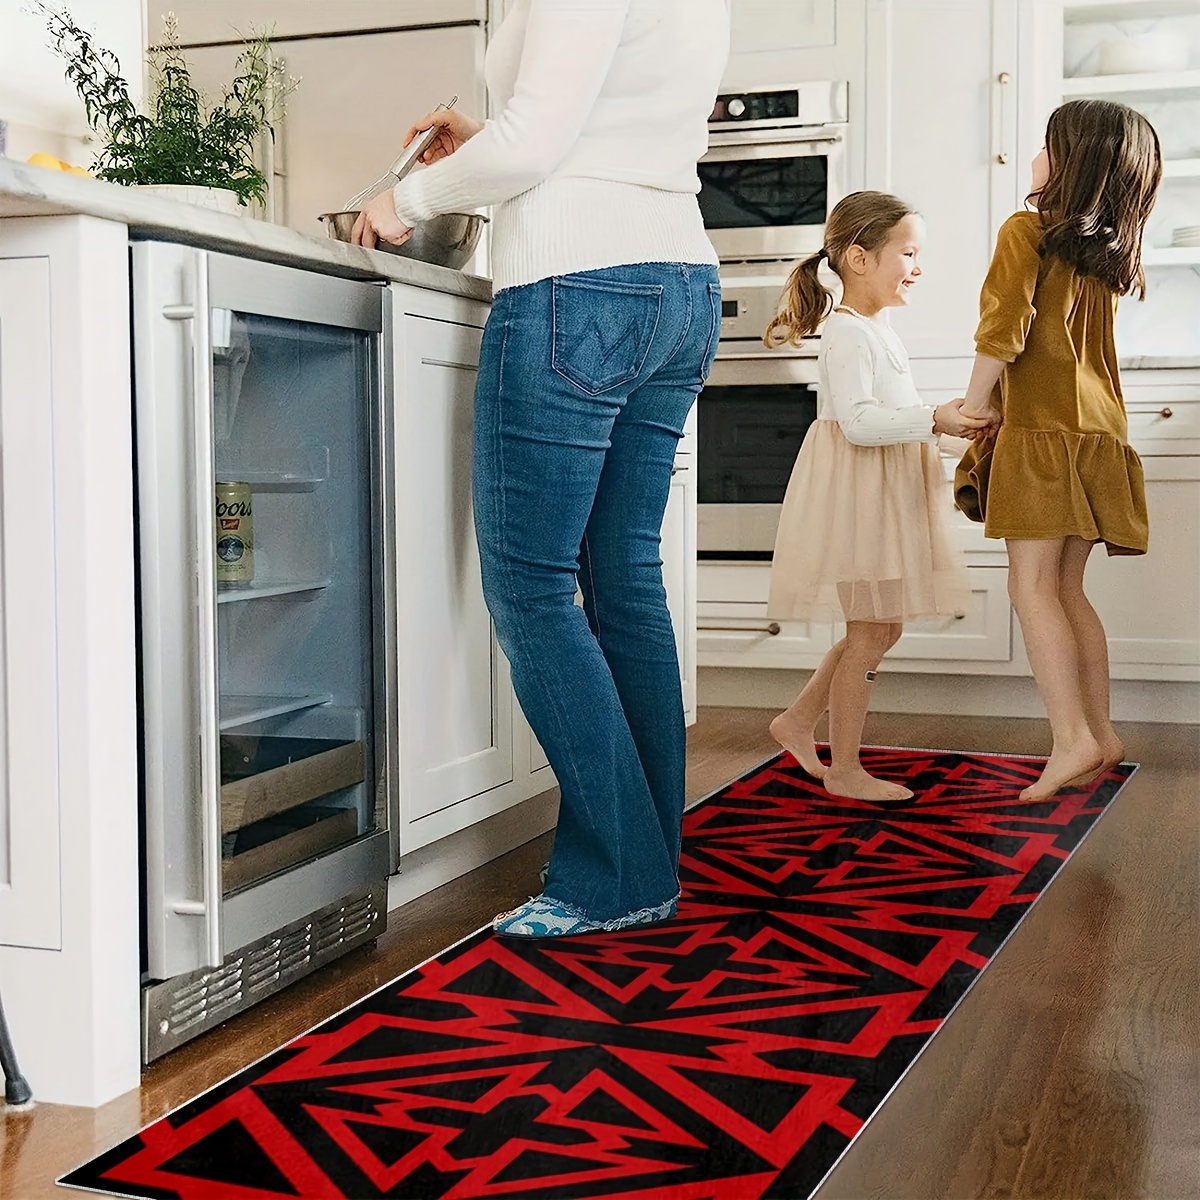 Long-kitchen-carpet-runner